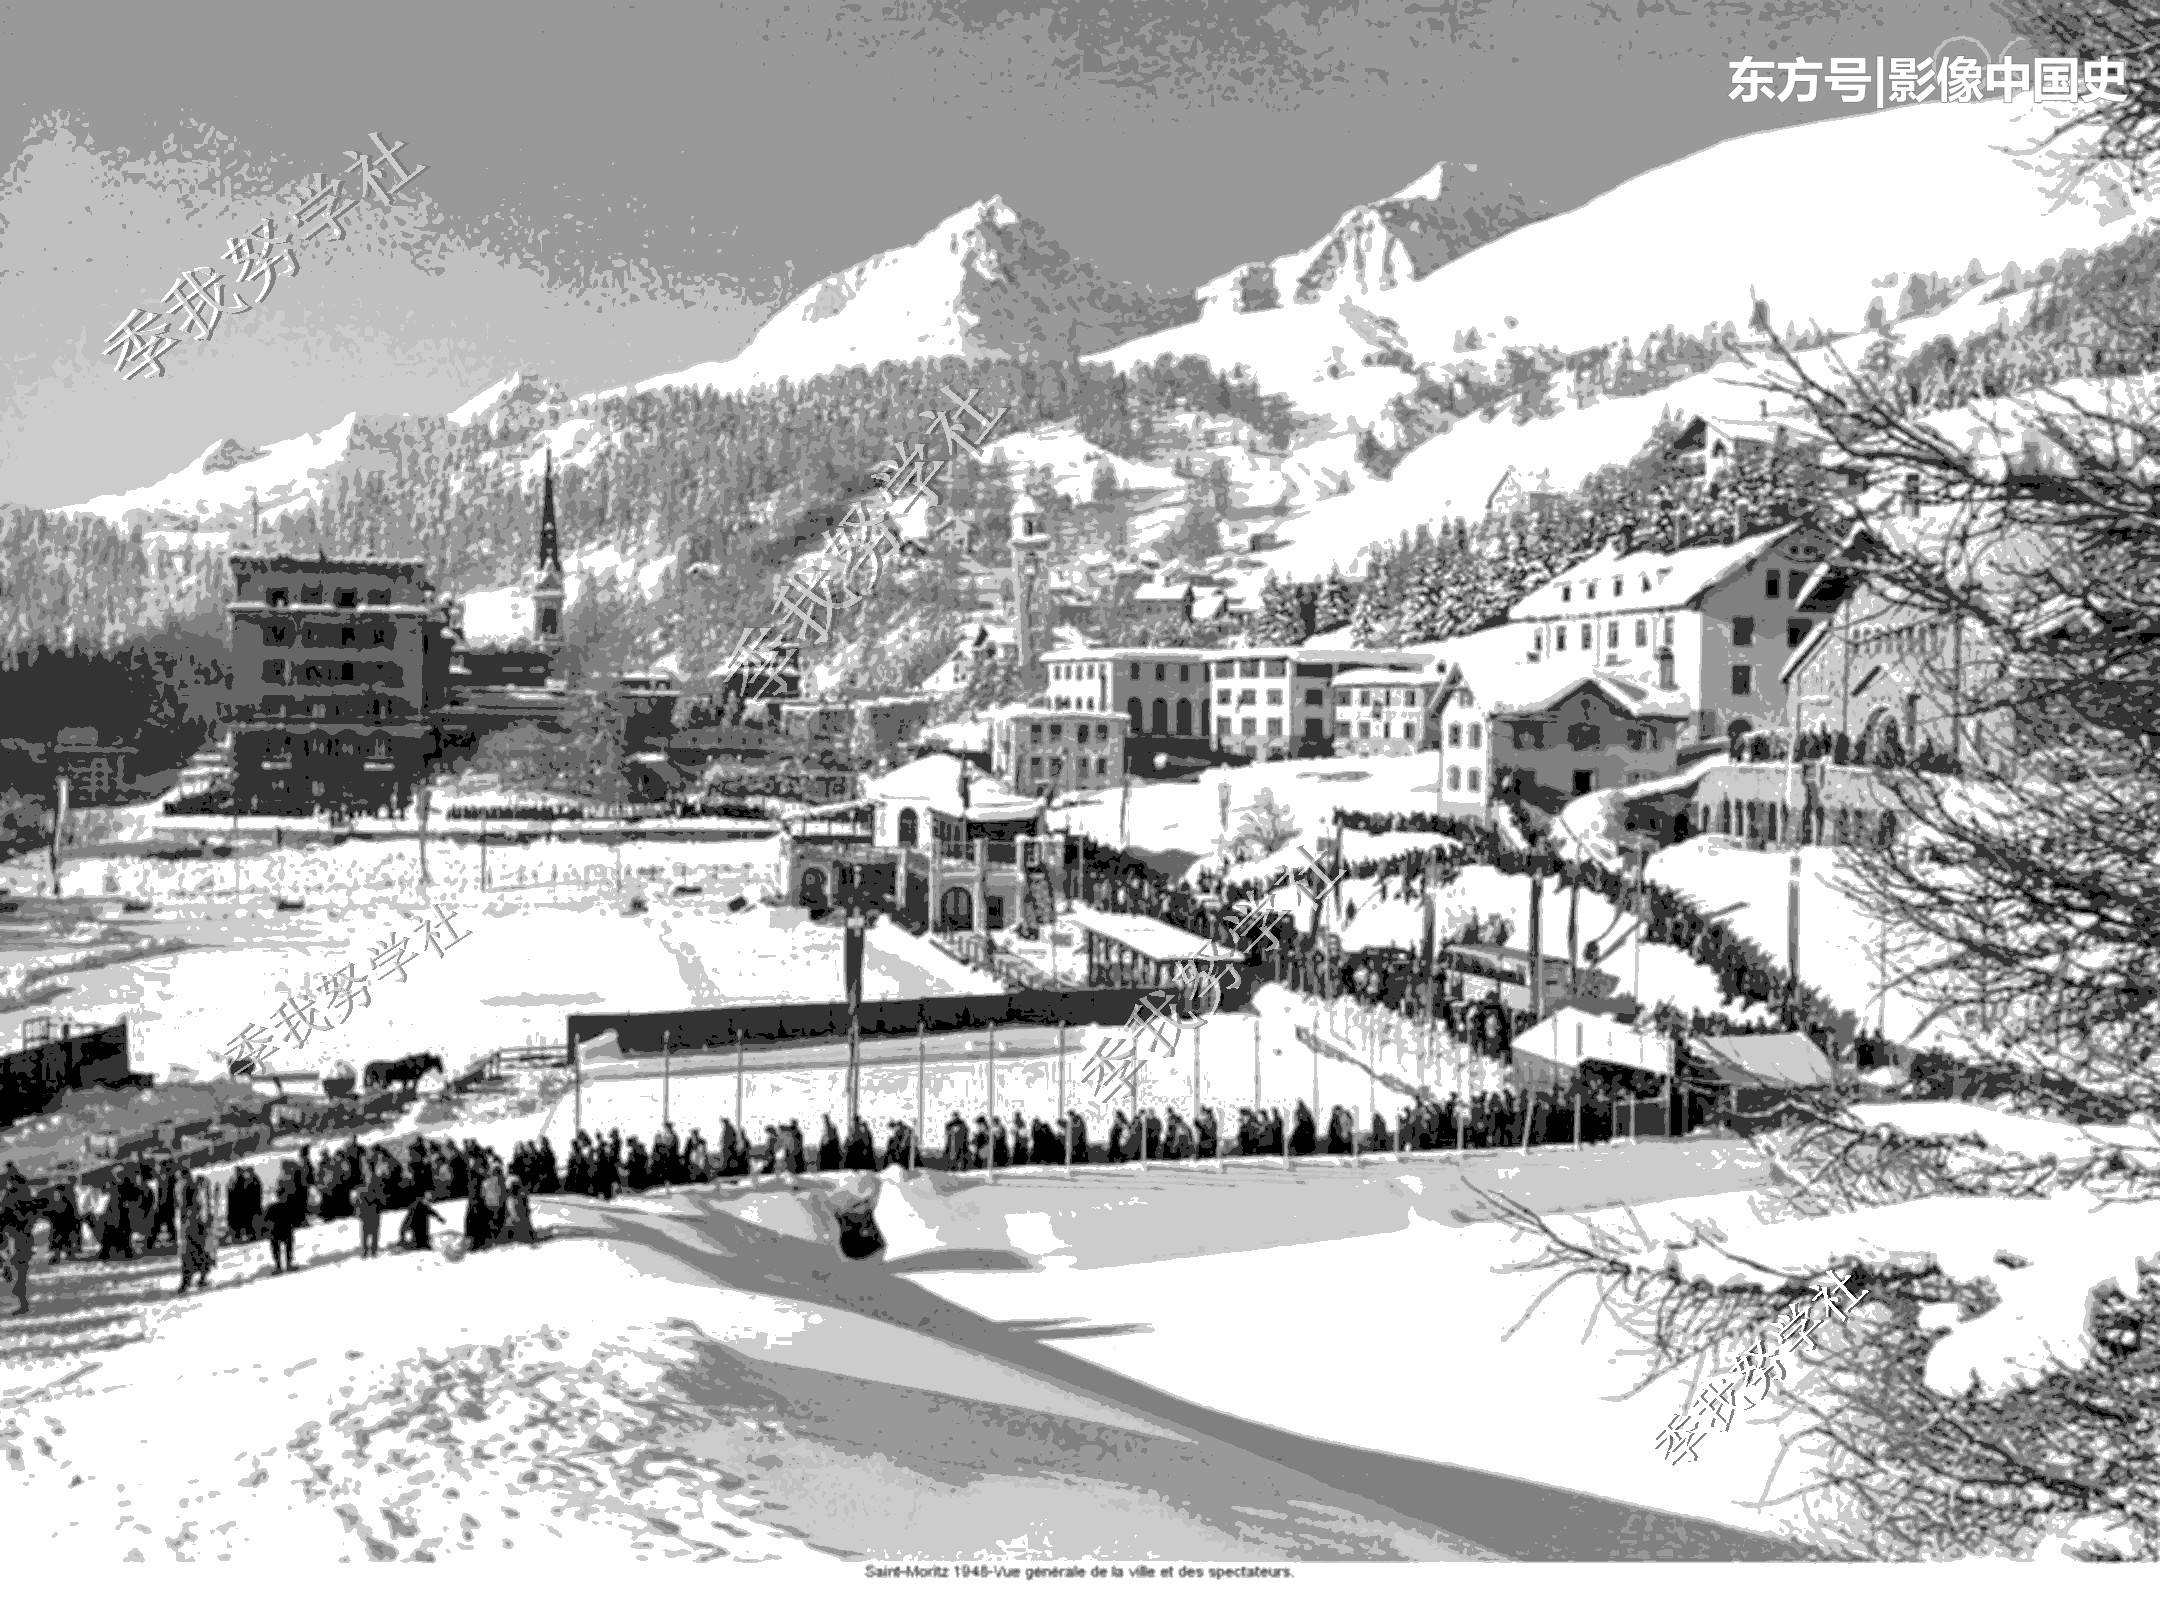 当香槟小镇遇上阿尔卑斯山：图说1948年圣莫里茨冬奥会开幕式 第1页